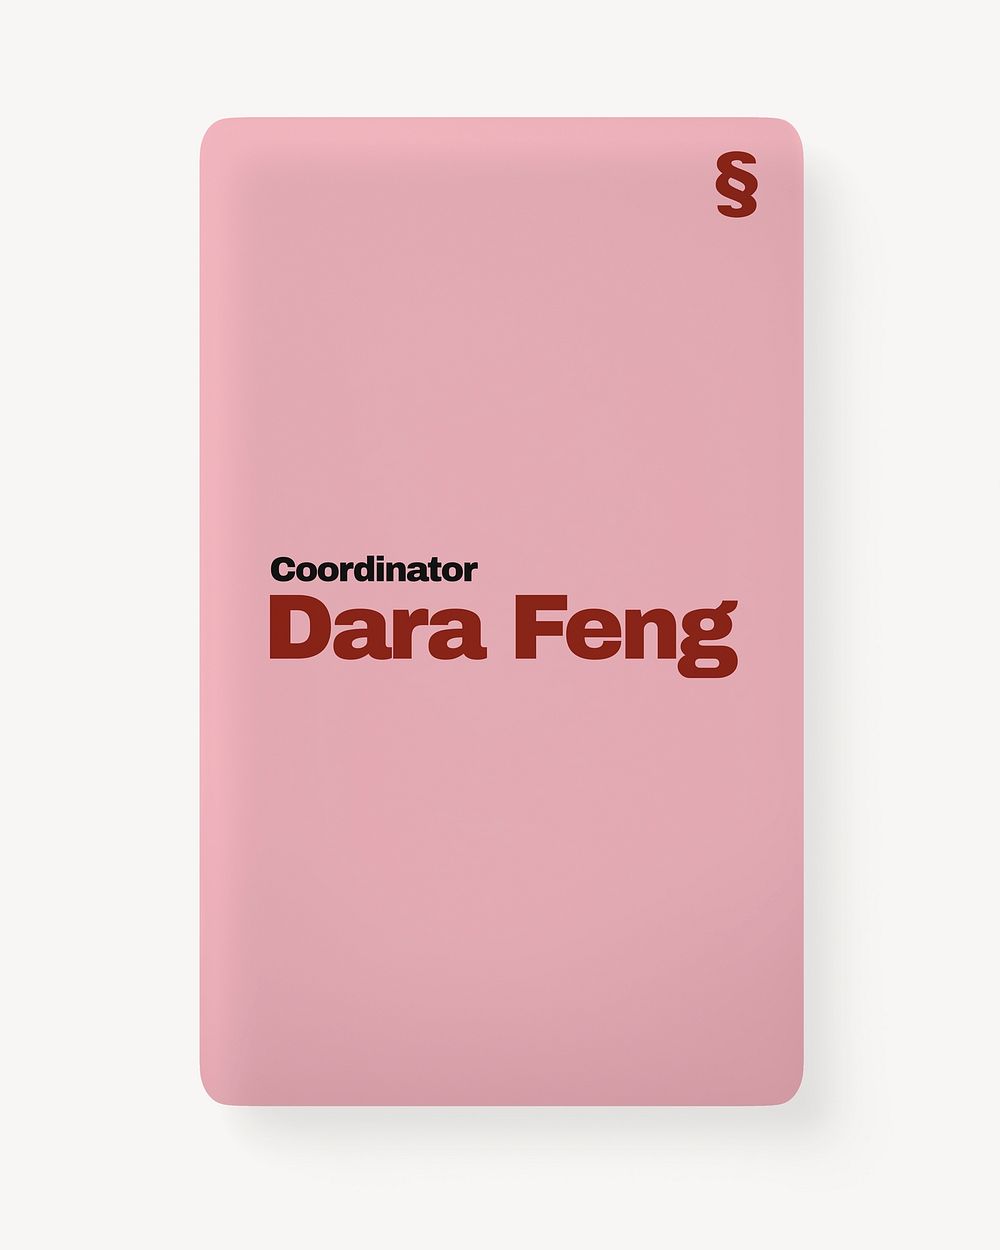 Business card mockup, pink 3D rendering design psd